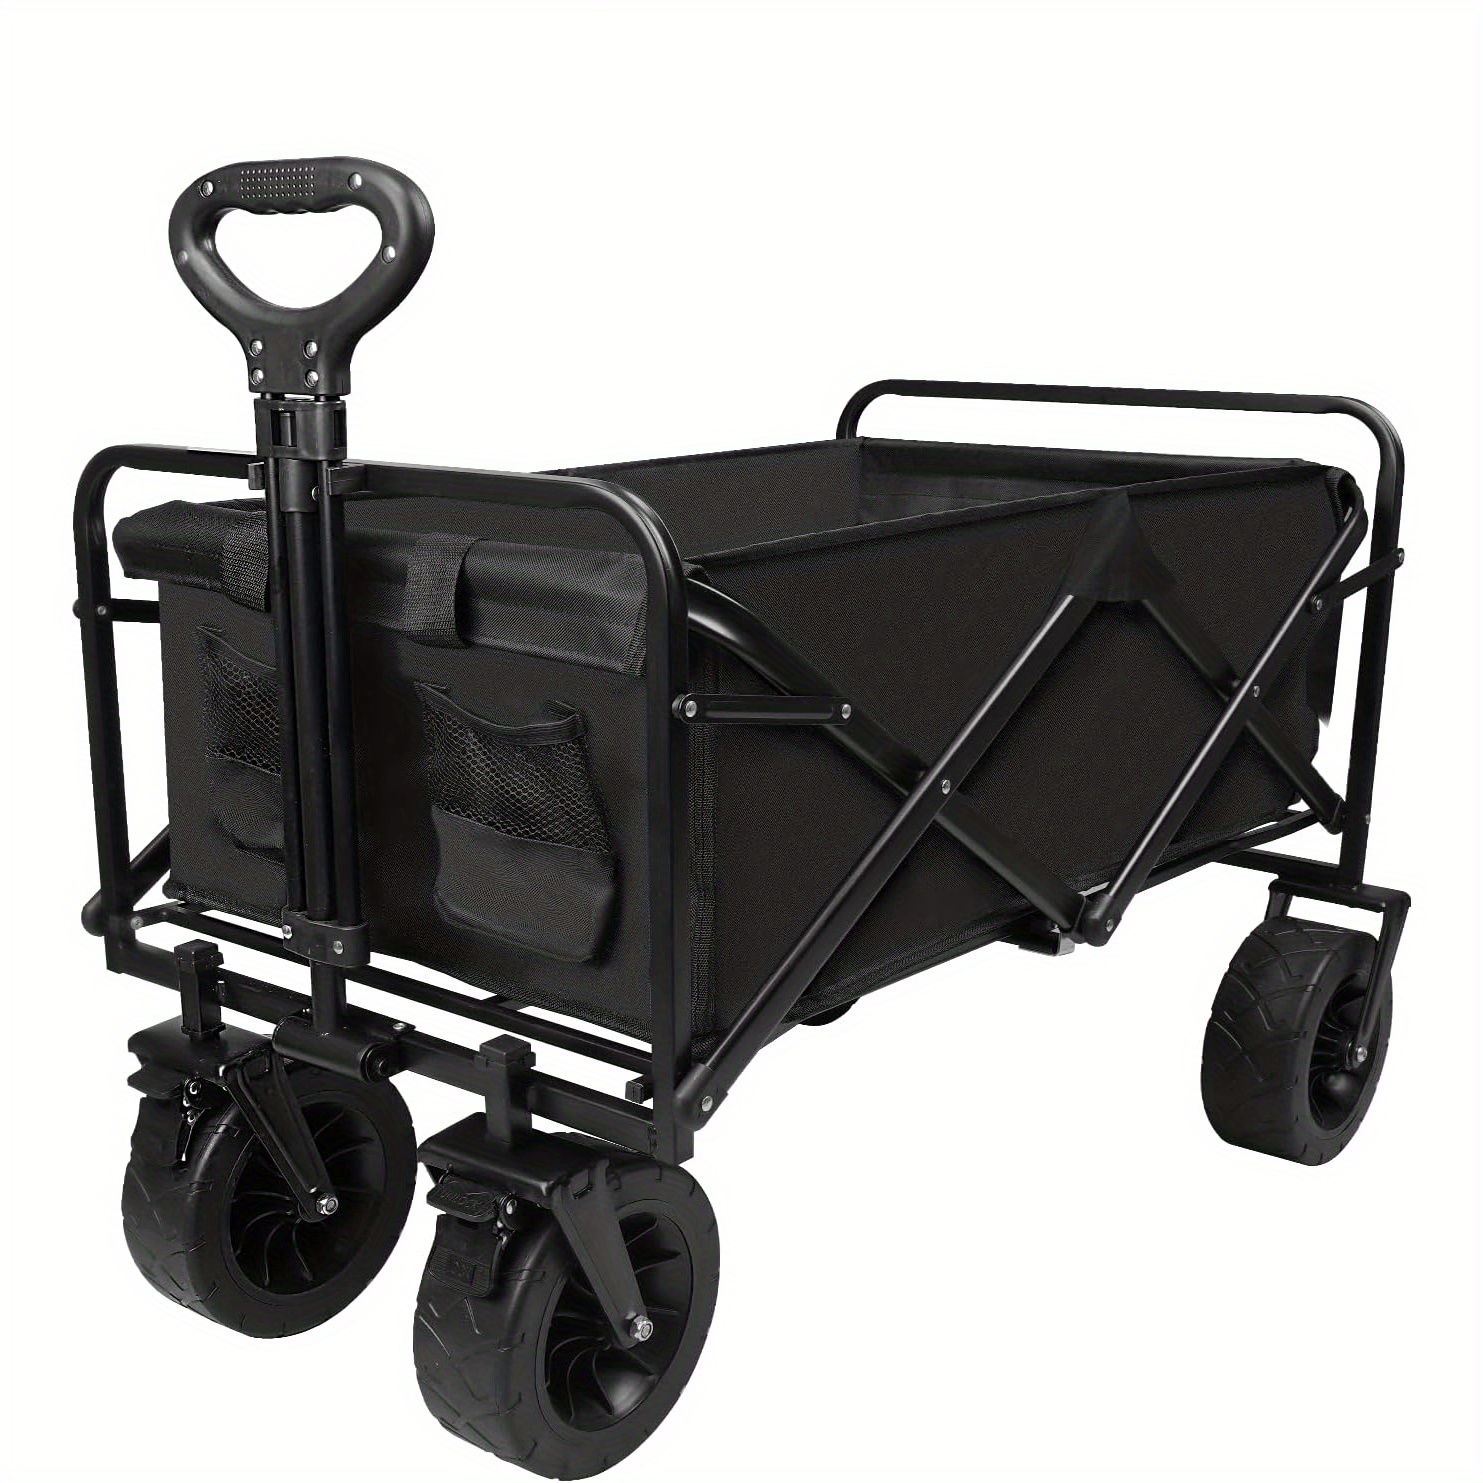  FEANG Carrito plegable de la compra plegable con tres ruedas  carro utilitario ligero escalera, carrito de la compra para compras,  camping material de transporte (color: negro) : Productos de Oficina